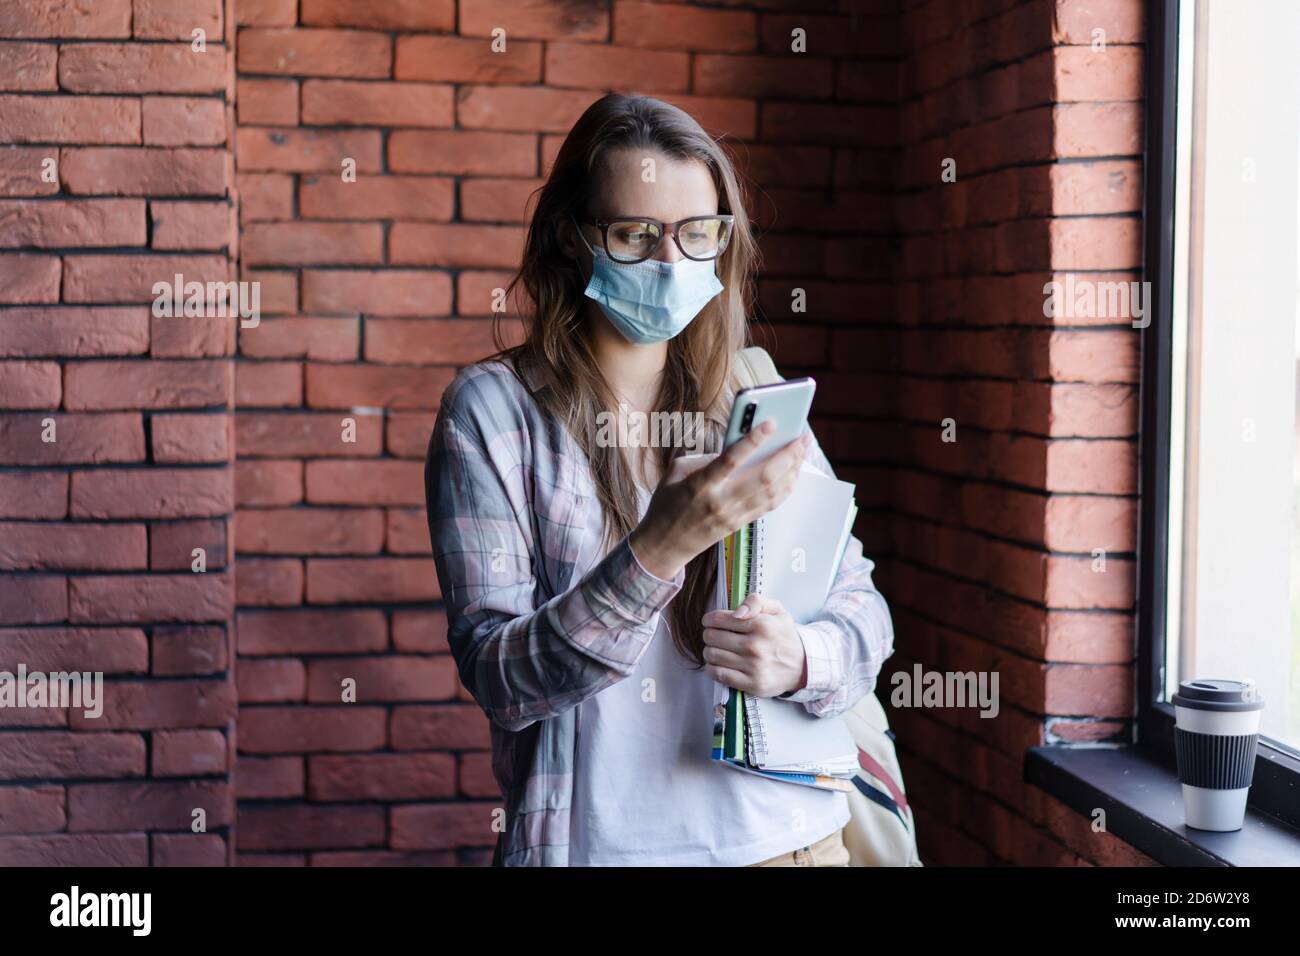 Studentin in einer schützenden medizinischen Maske auf ihrem Gesicht schaut auf das Telefon. Stockfoto